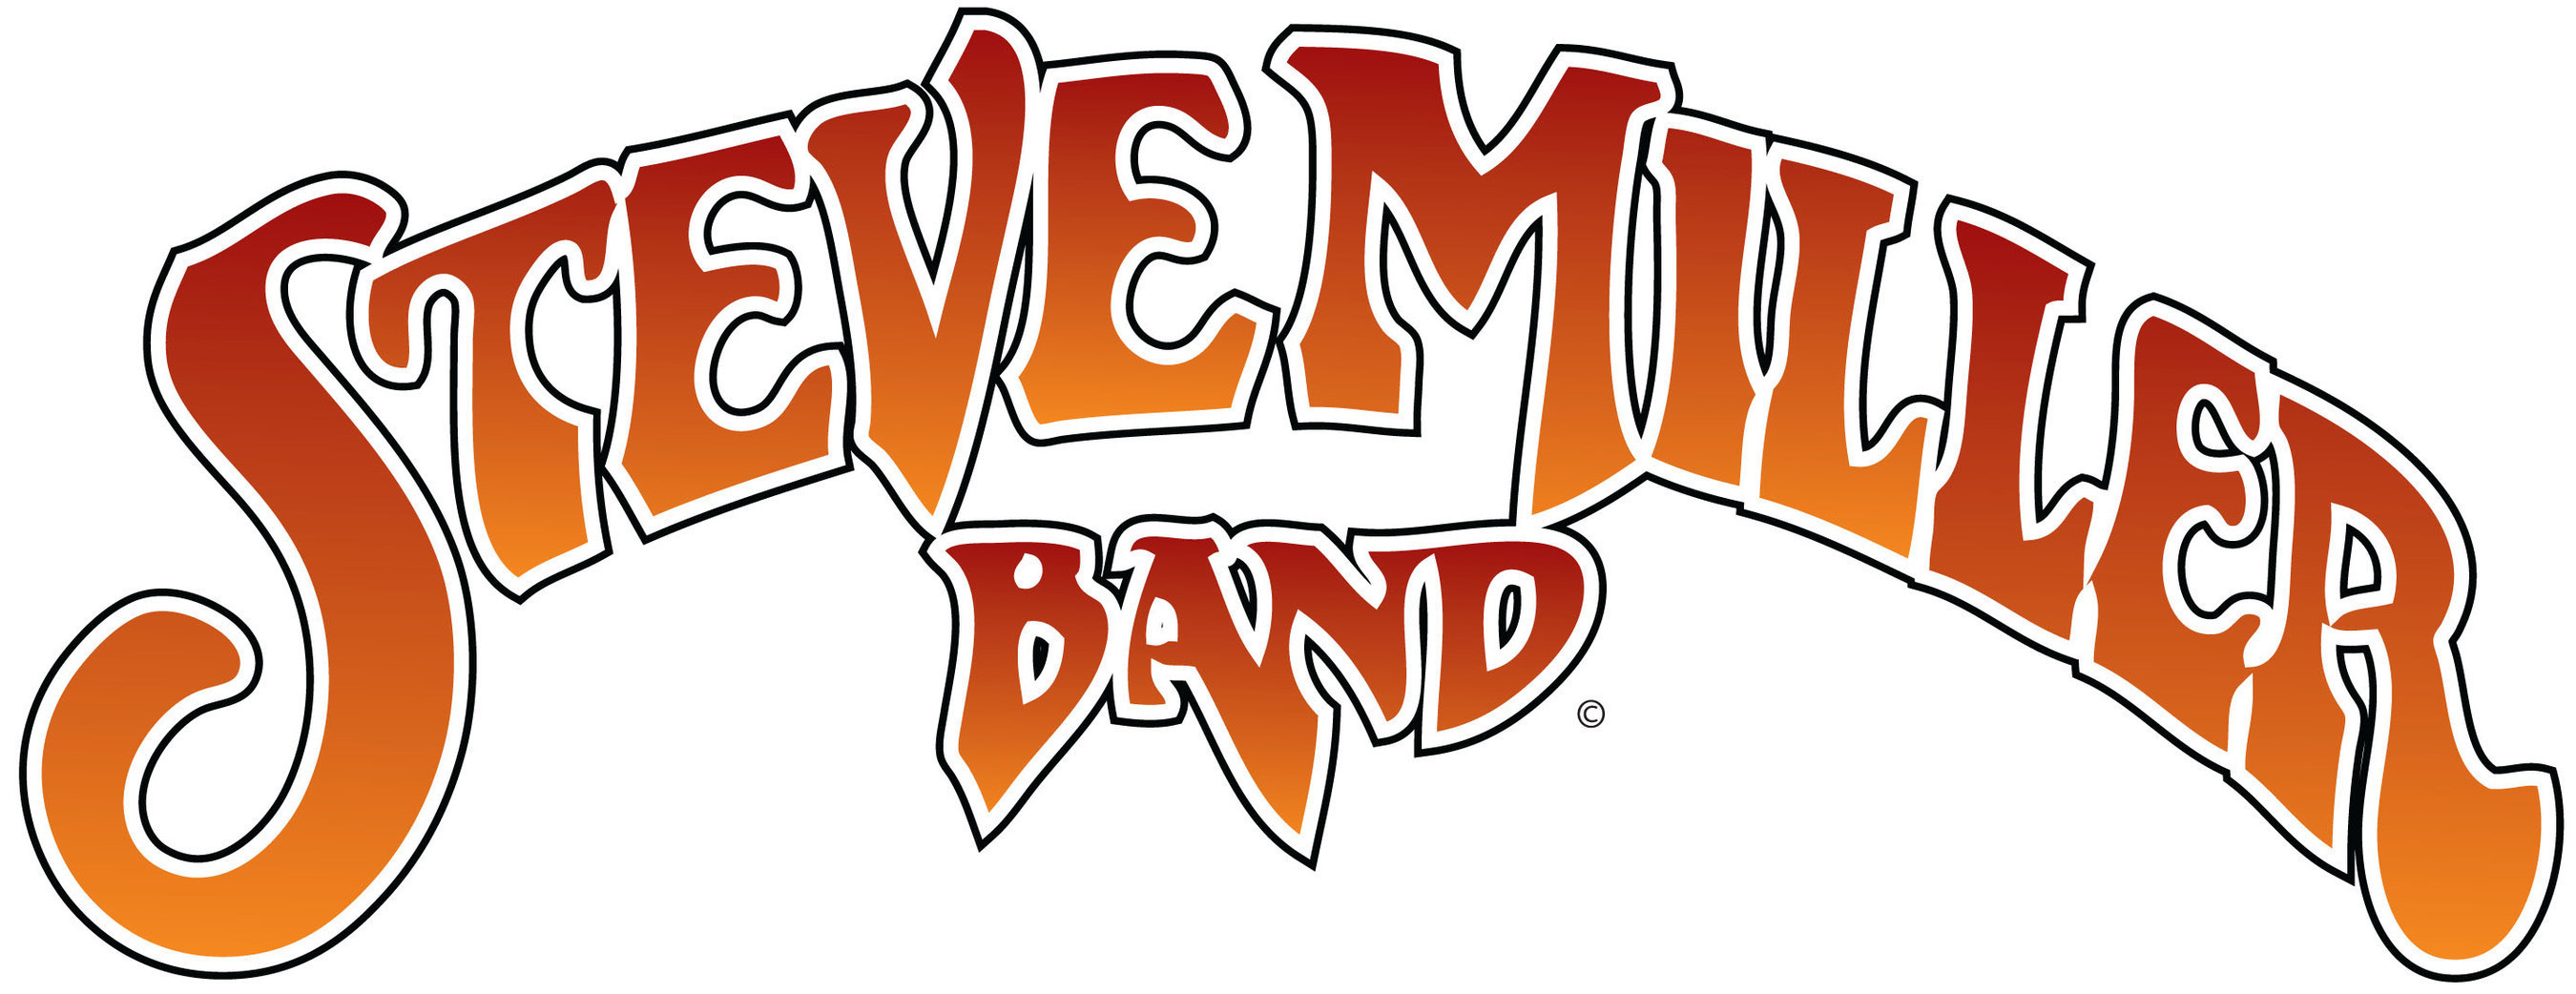 Steve Miller Band classic logo